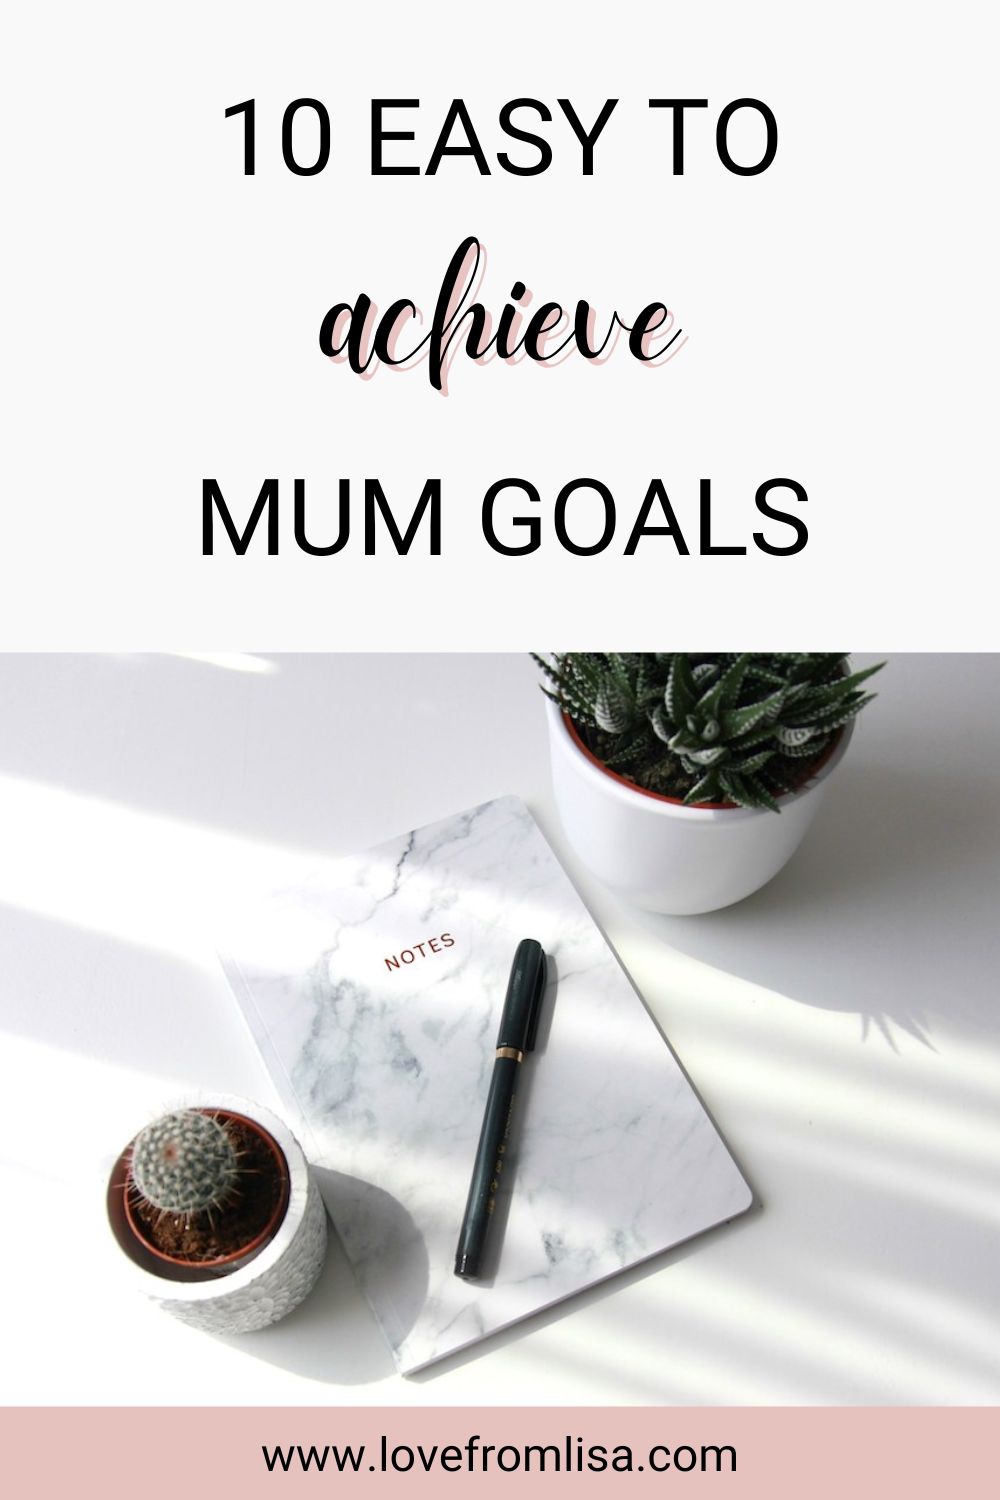 10 easy to achieve mum goals Pinterest graphic